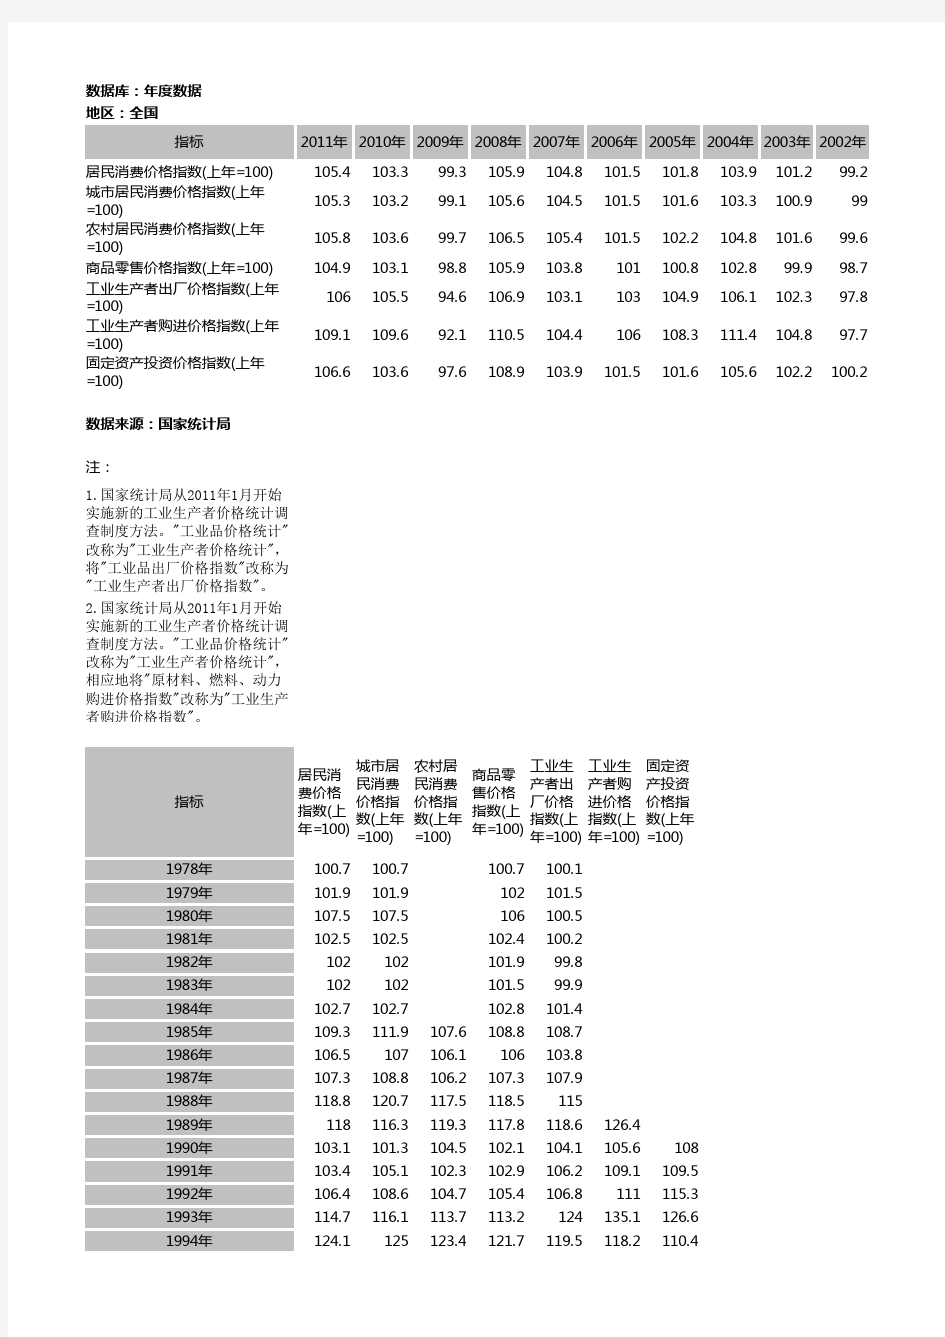 中国历年消费价格指数CPI(1978-2011)